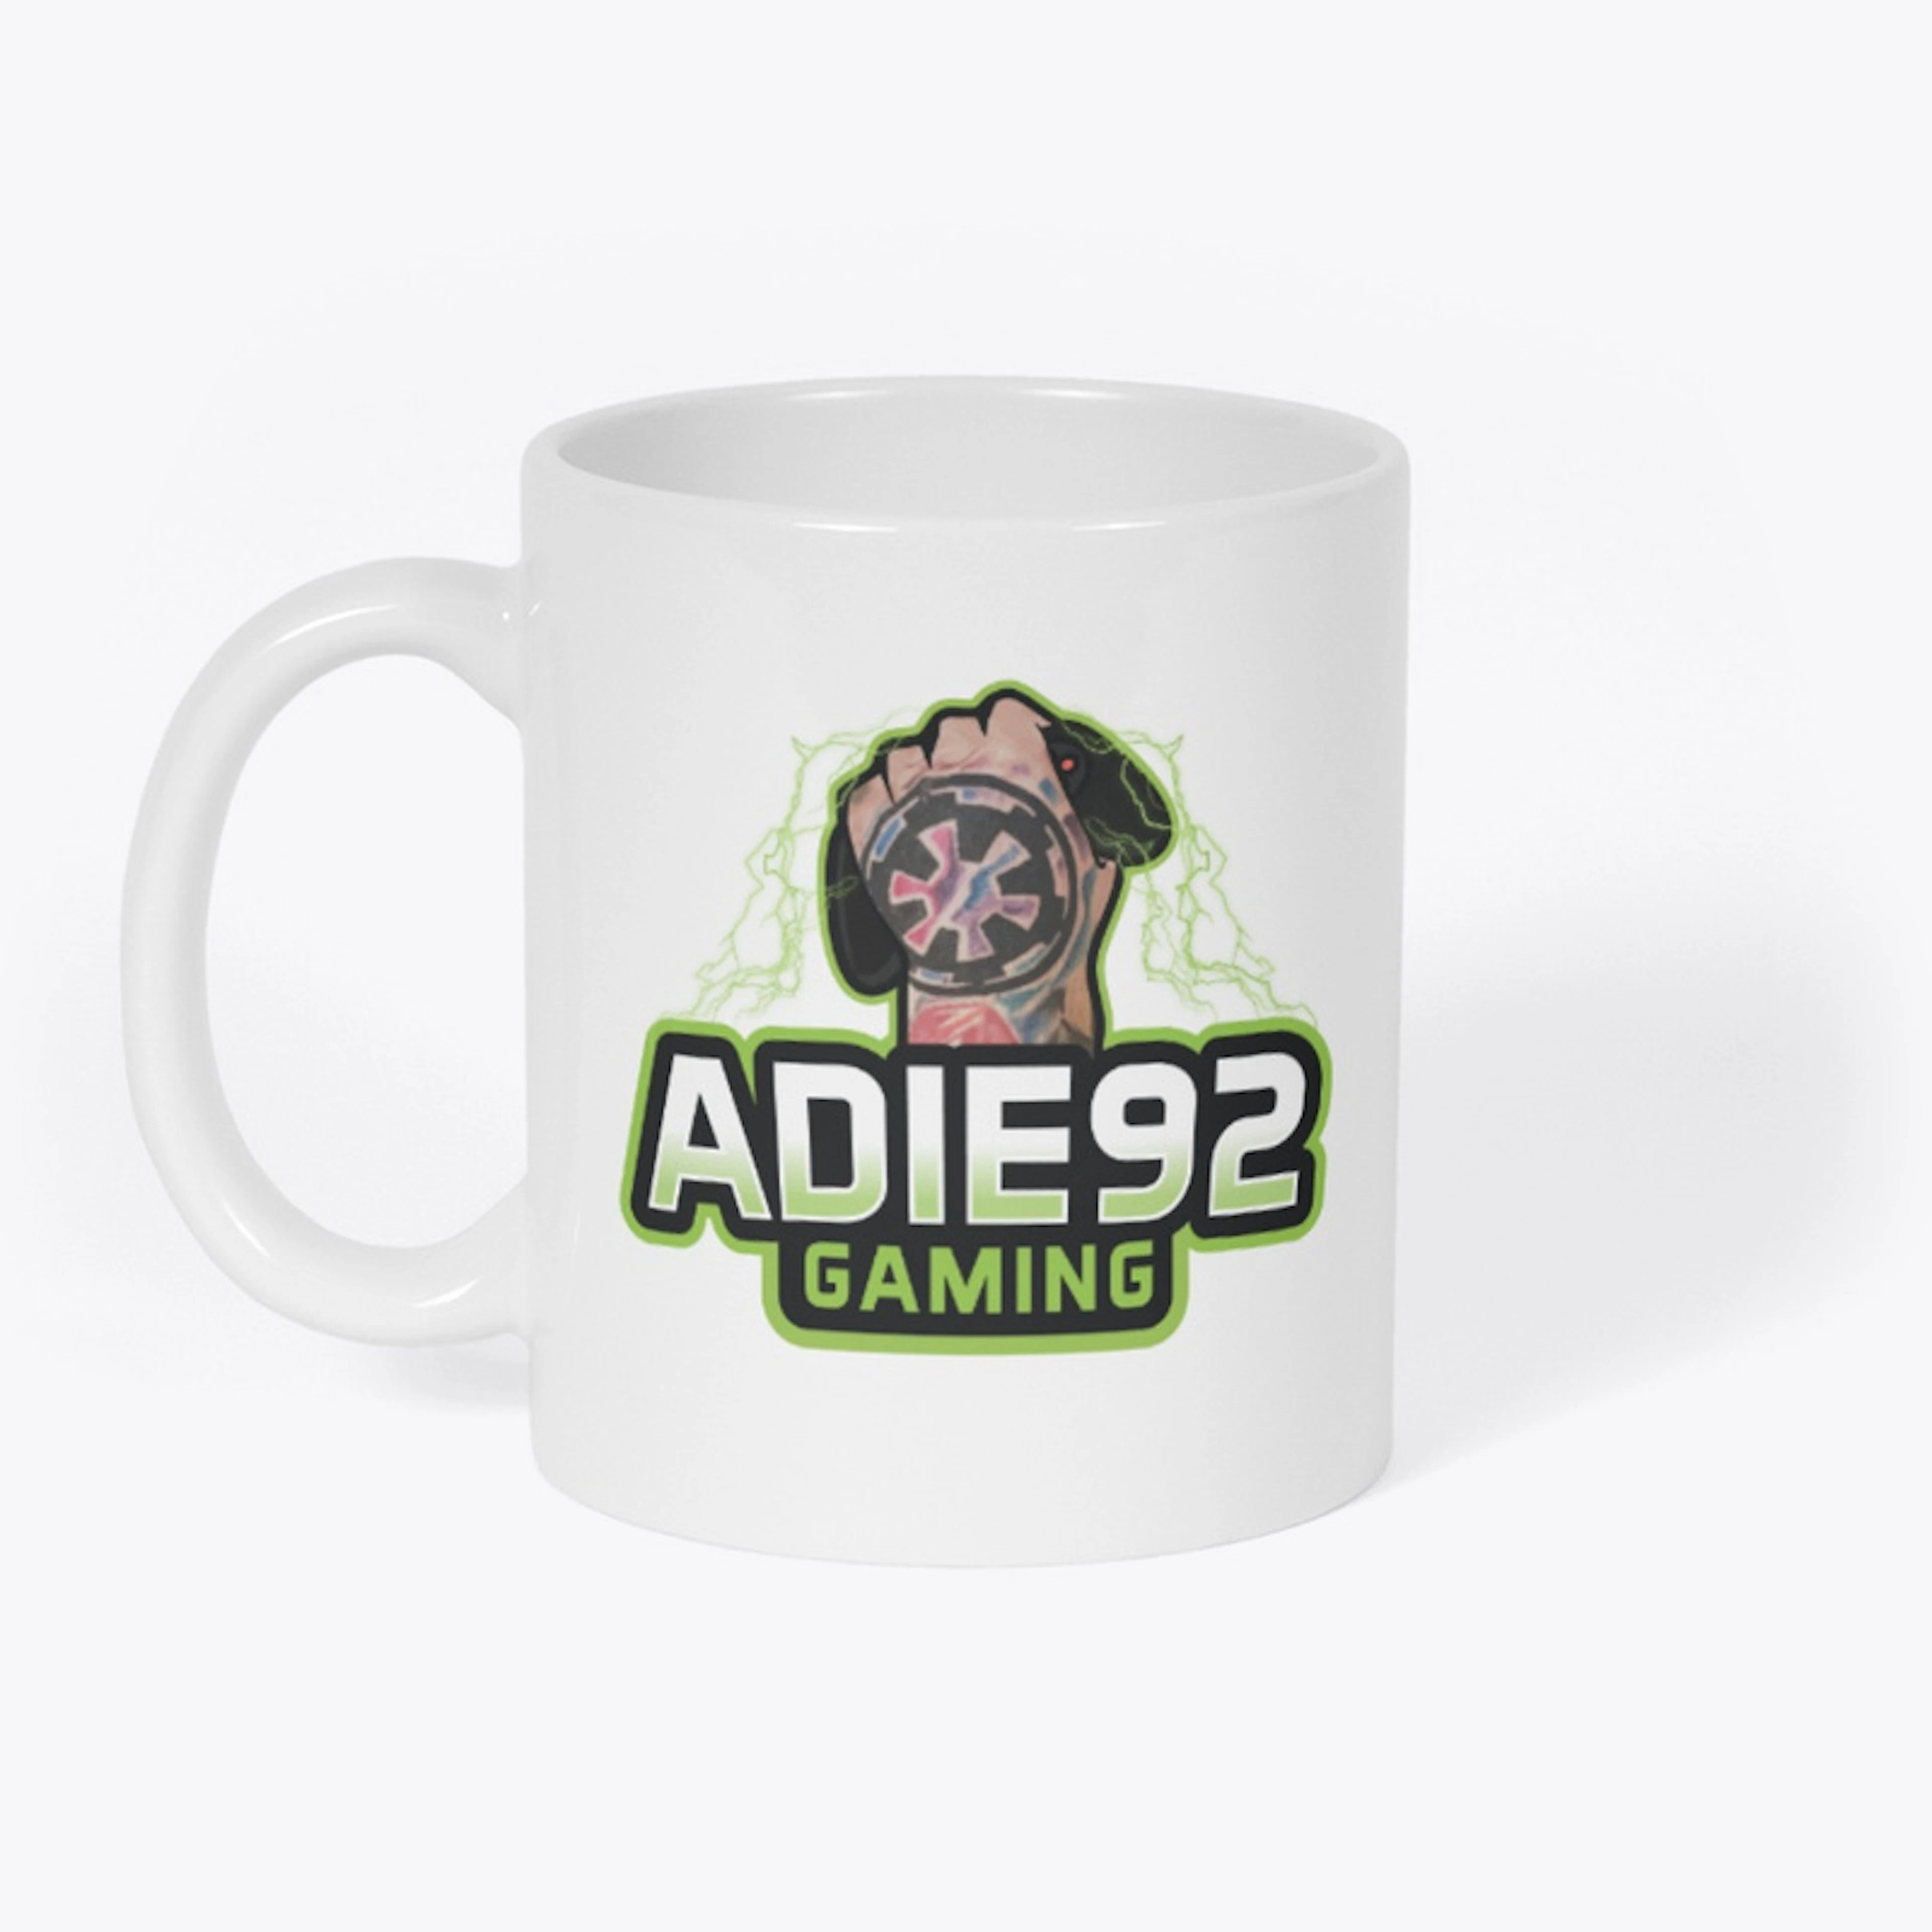 Adie92 Mug (New Logo)